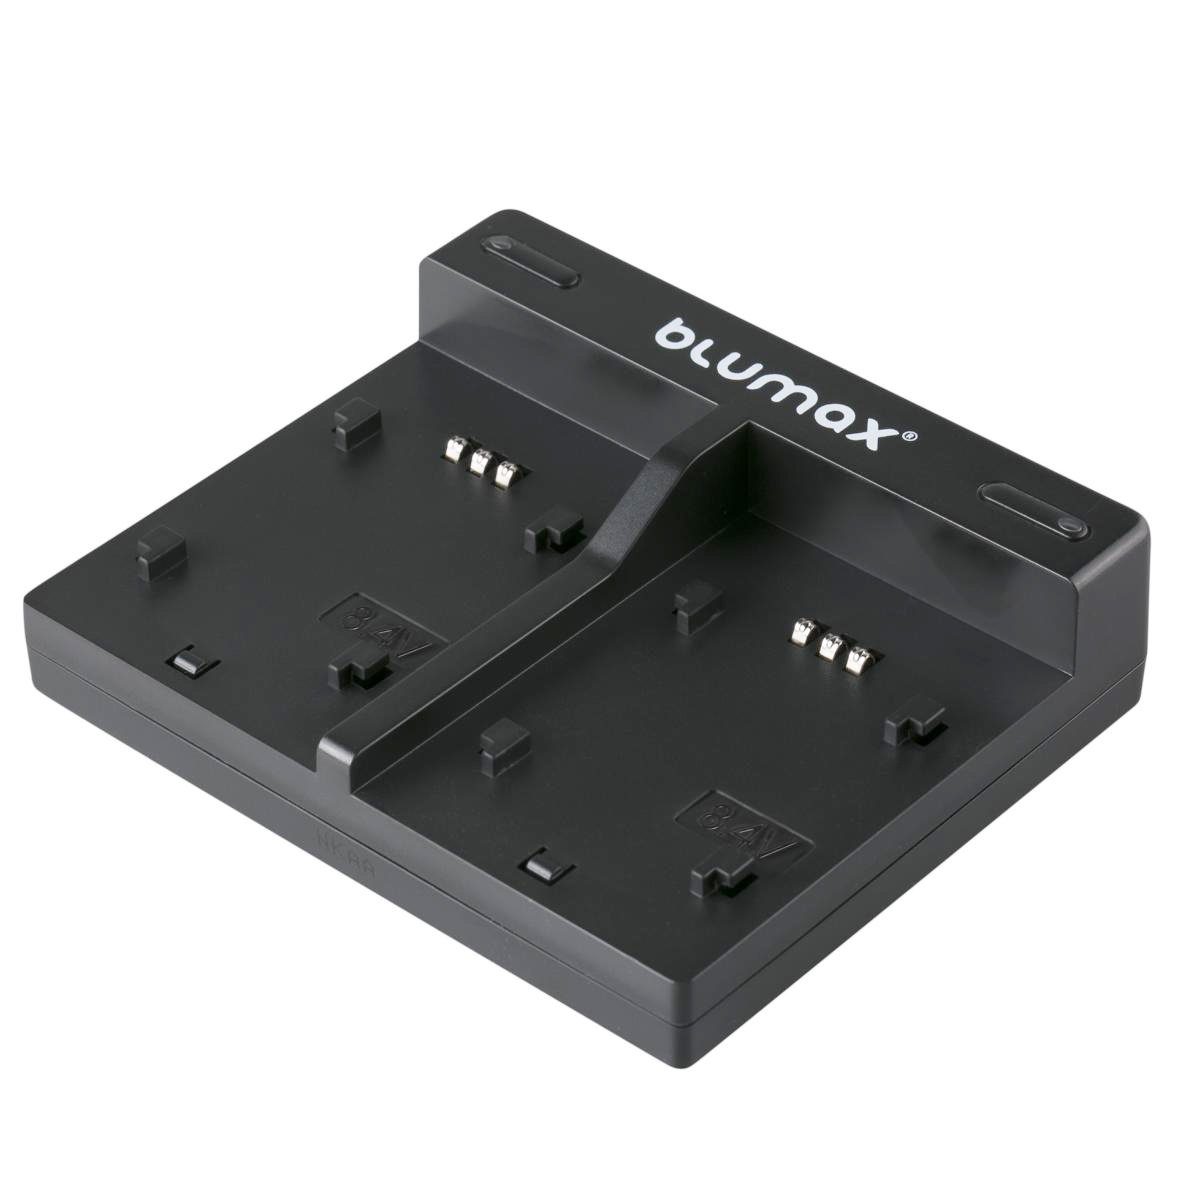 Blumax Set mit Lader für 7850mAh Kamera-Akku mit NP-F970, USB 5V Sony